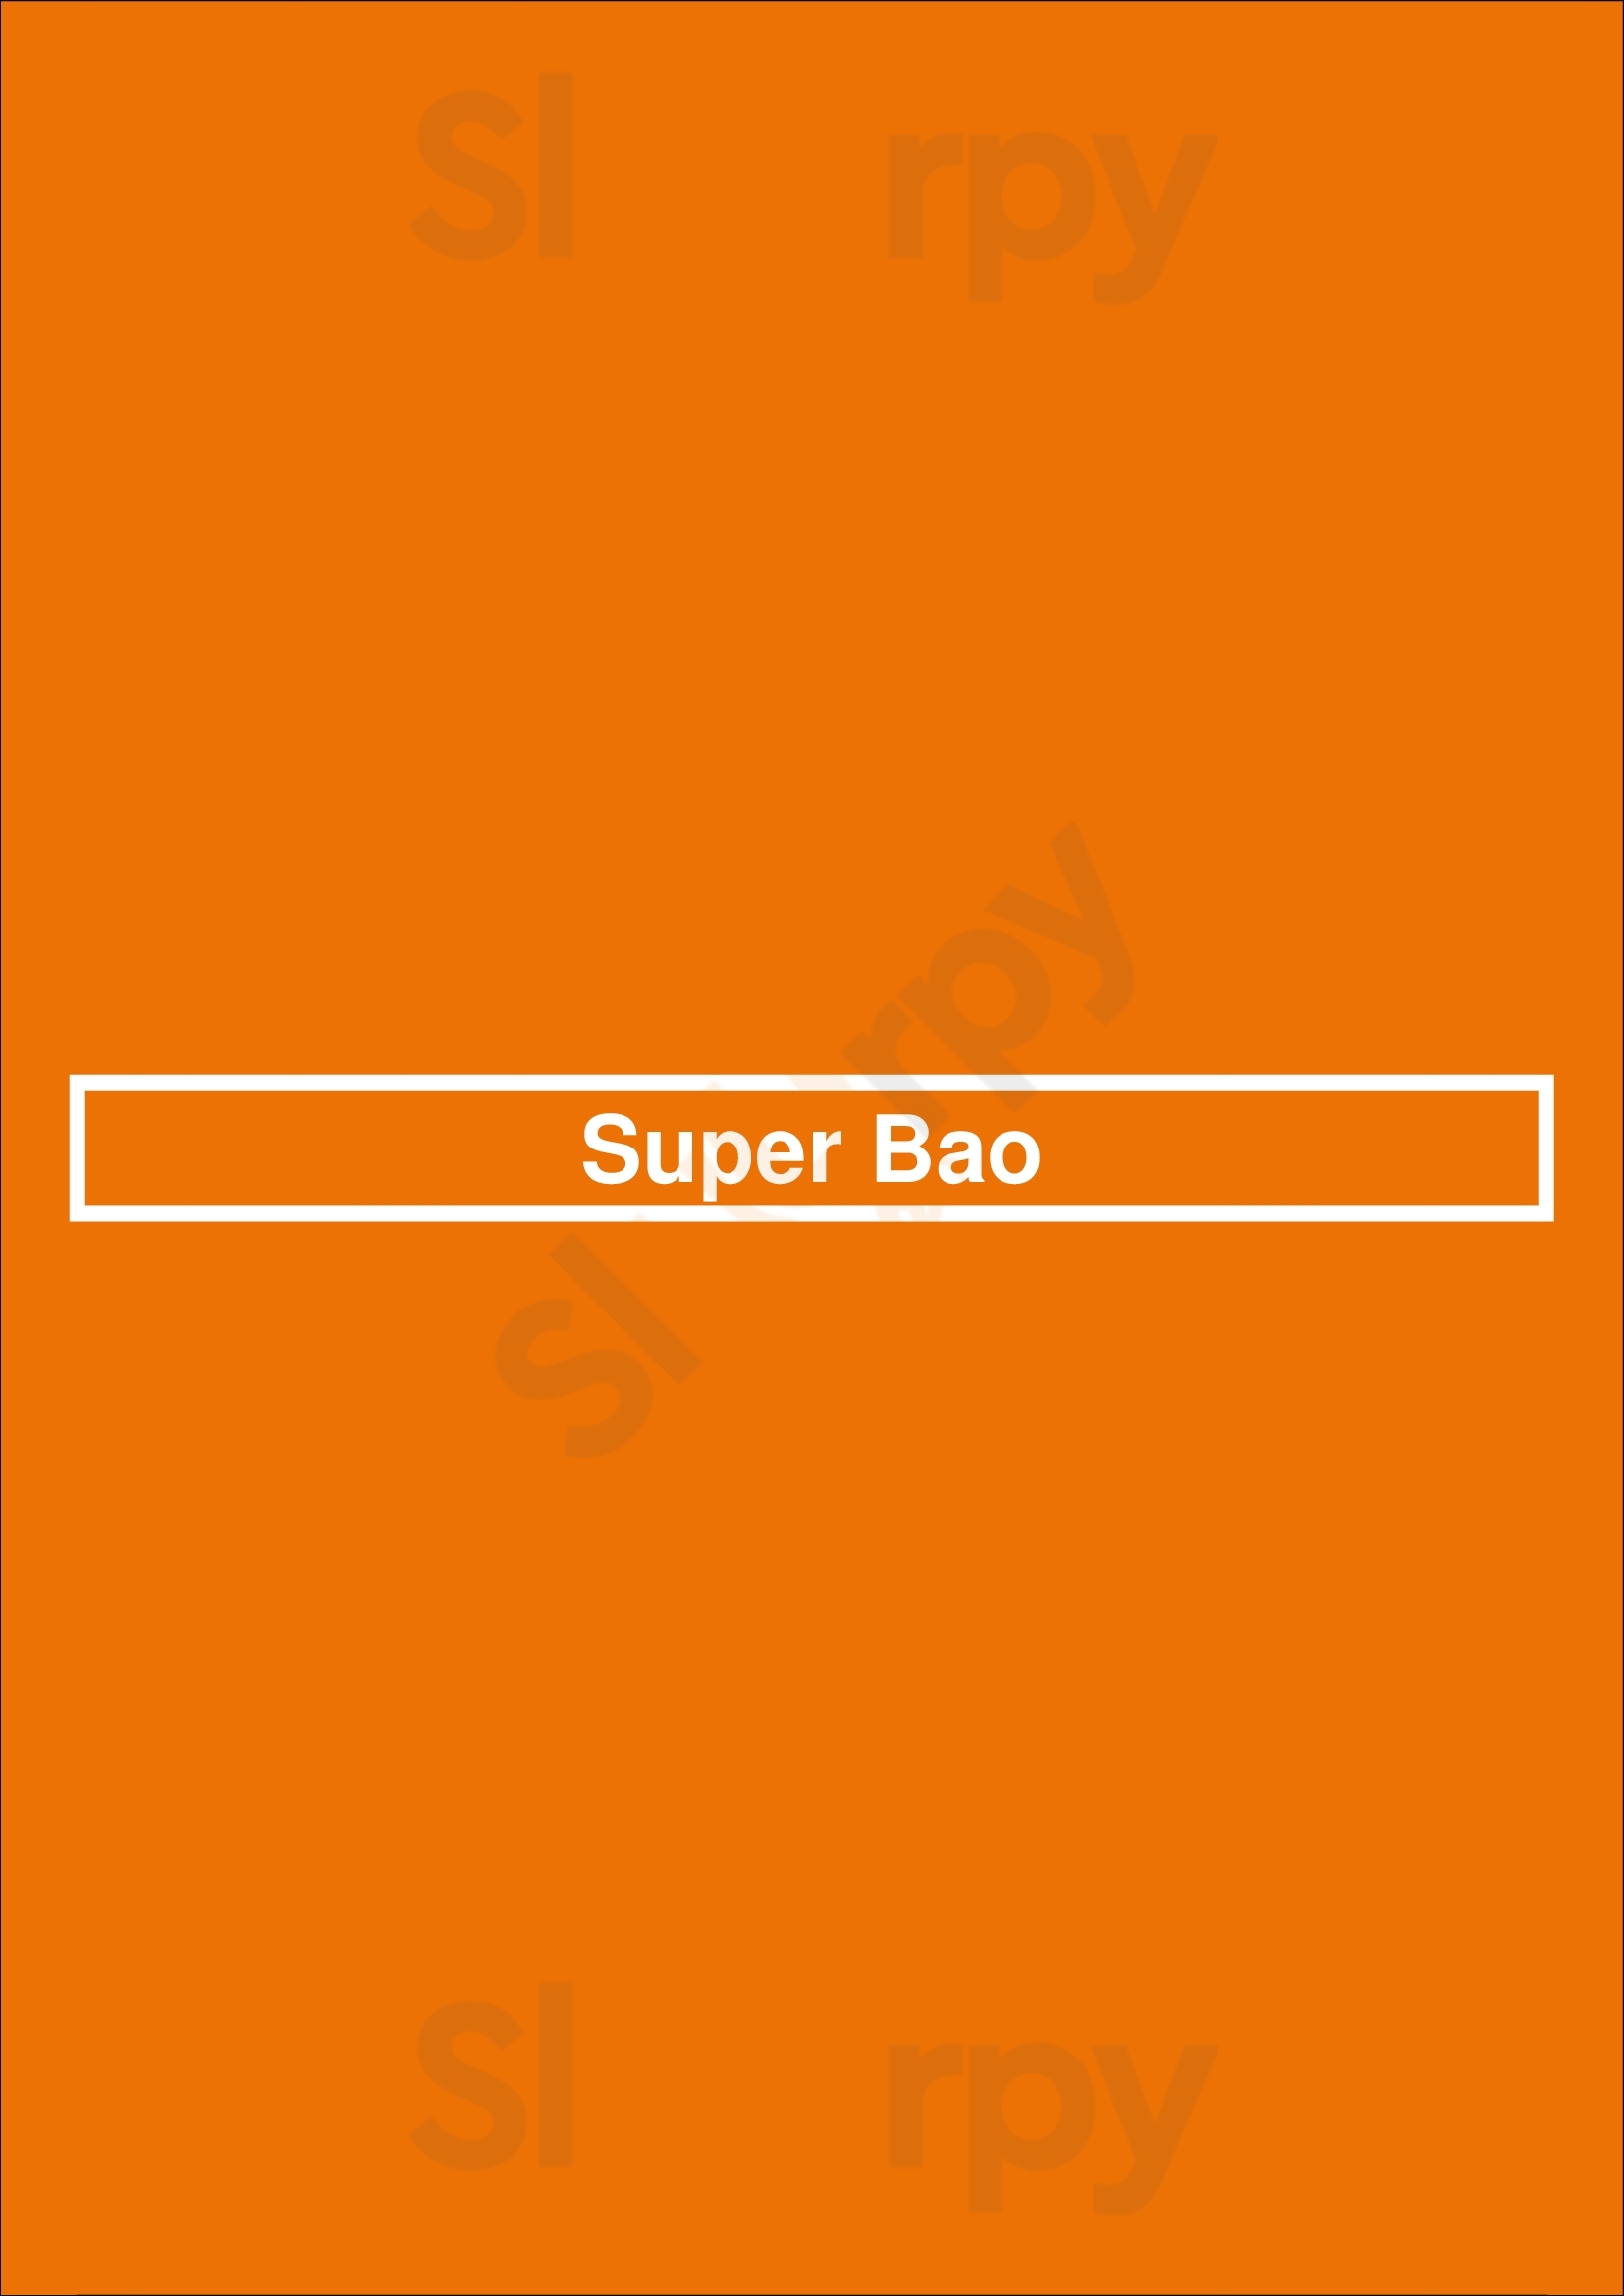 Super Bao Canberra Menu - 1